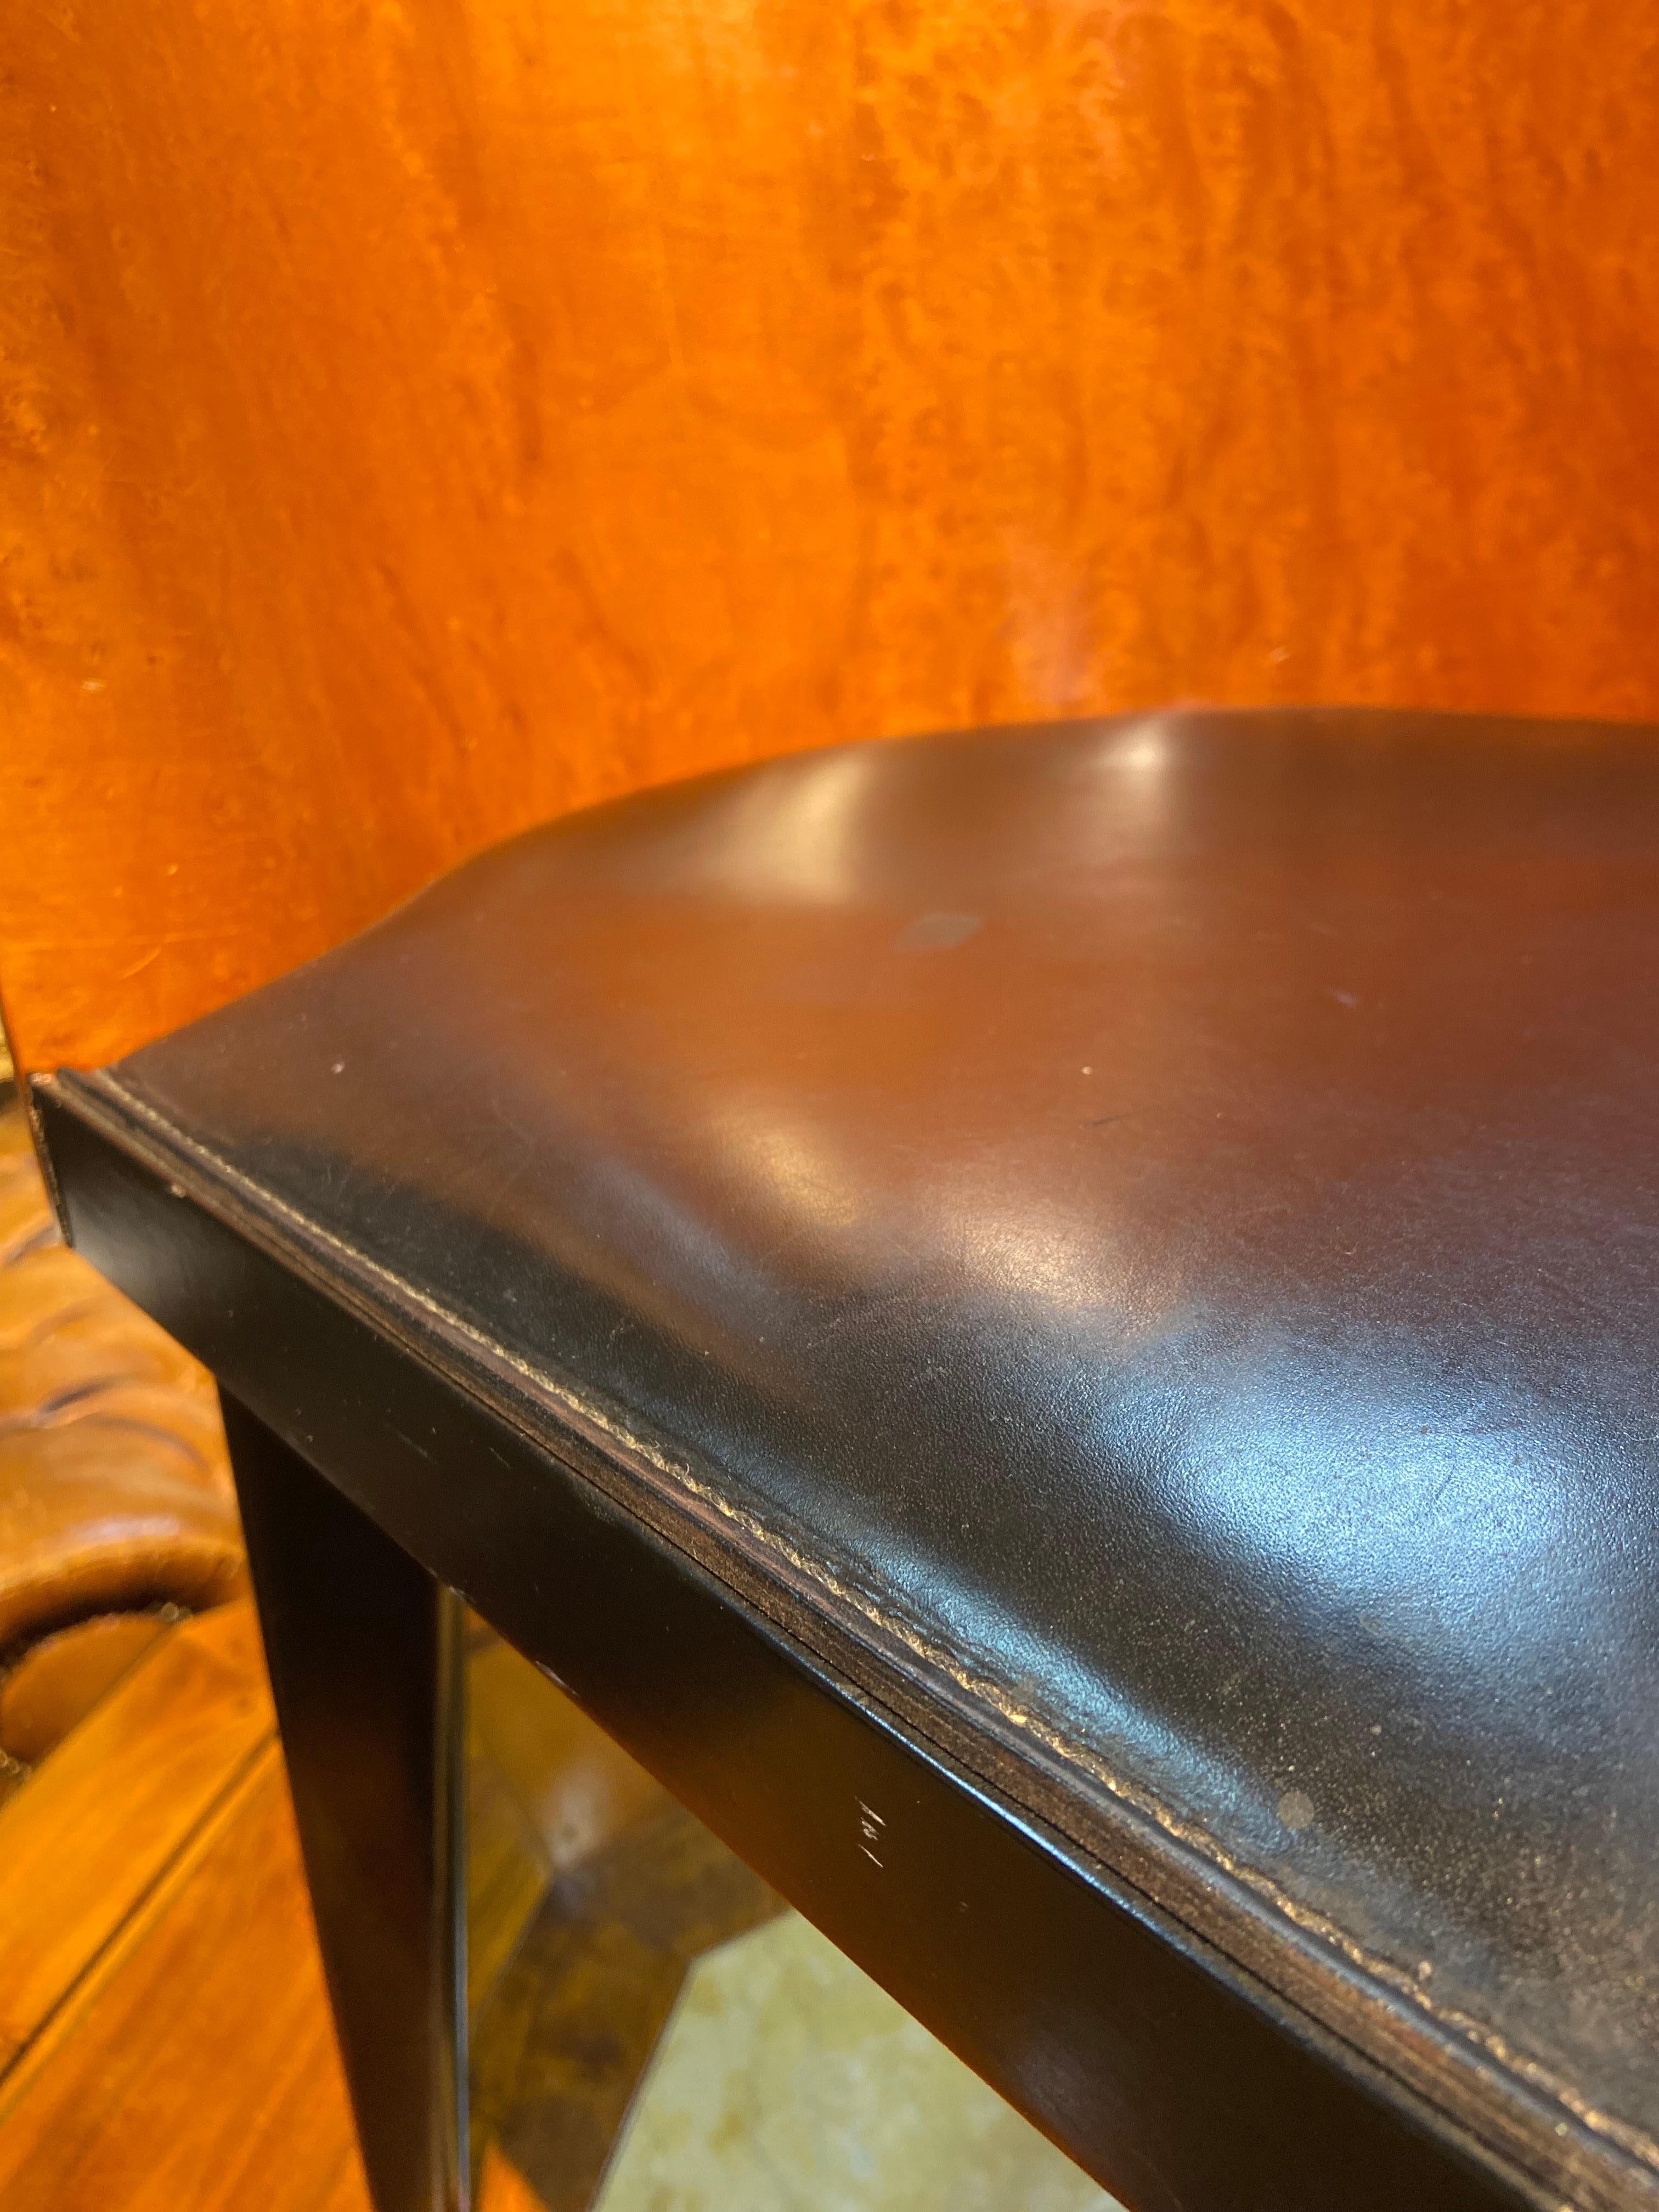 Nous présentons ici une seule chaise Toscana conçue par Piero Sartogo pour Saporiti en 1986. Il se caractérise par un dossier incurvé en placage de ronce, créant un magnifique aspect biomorphique asymétrique. Le siège est recouvert de cuir noir. 
La